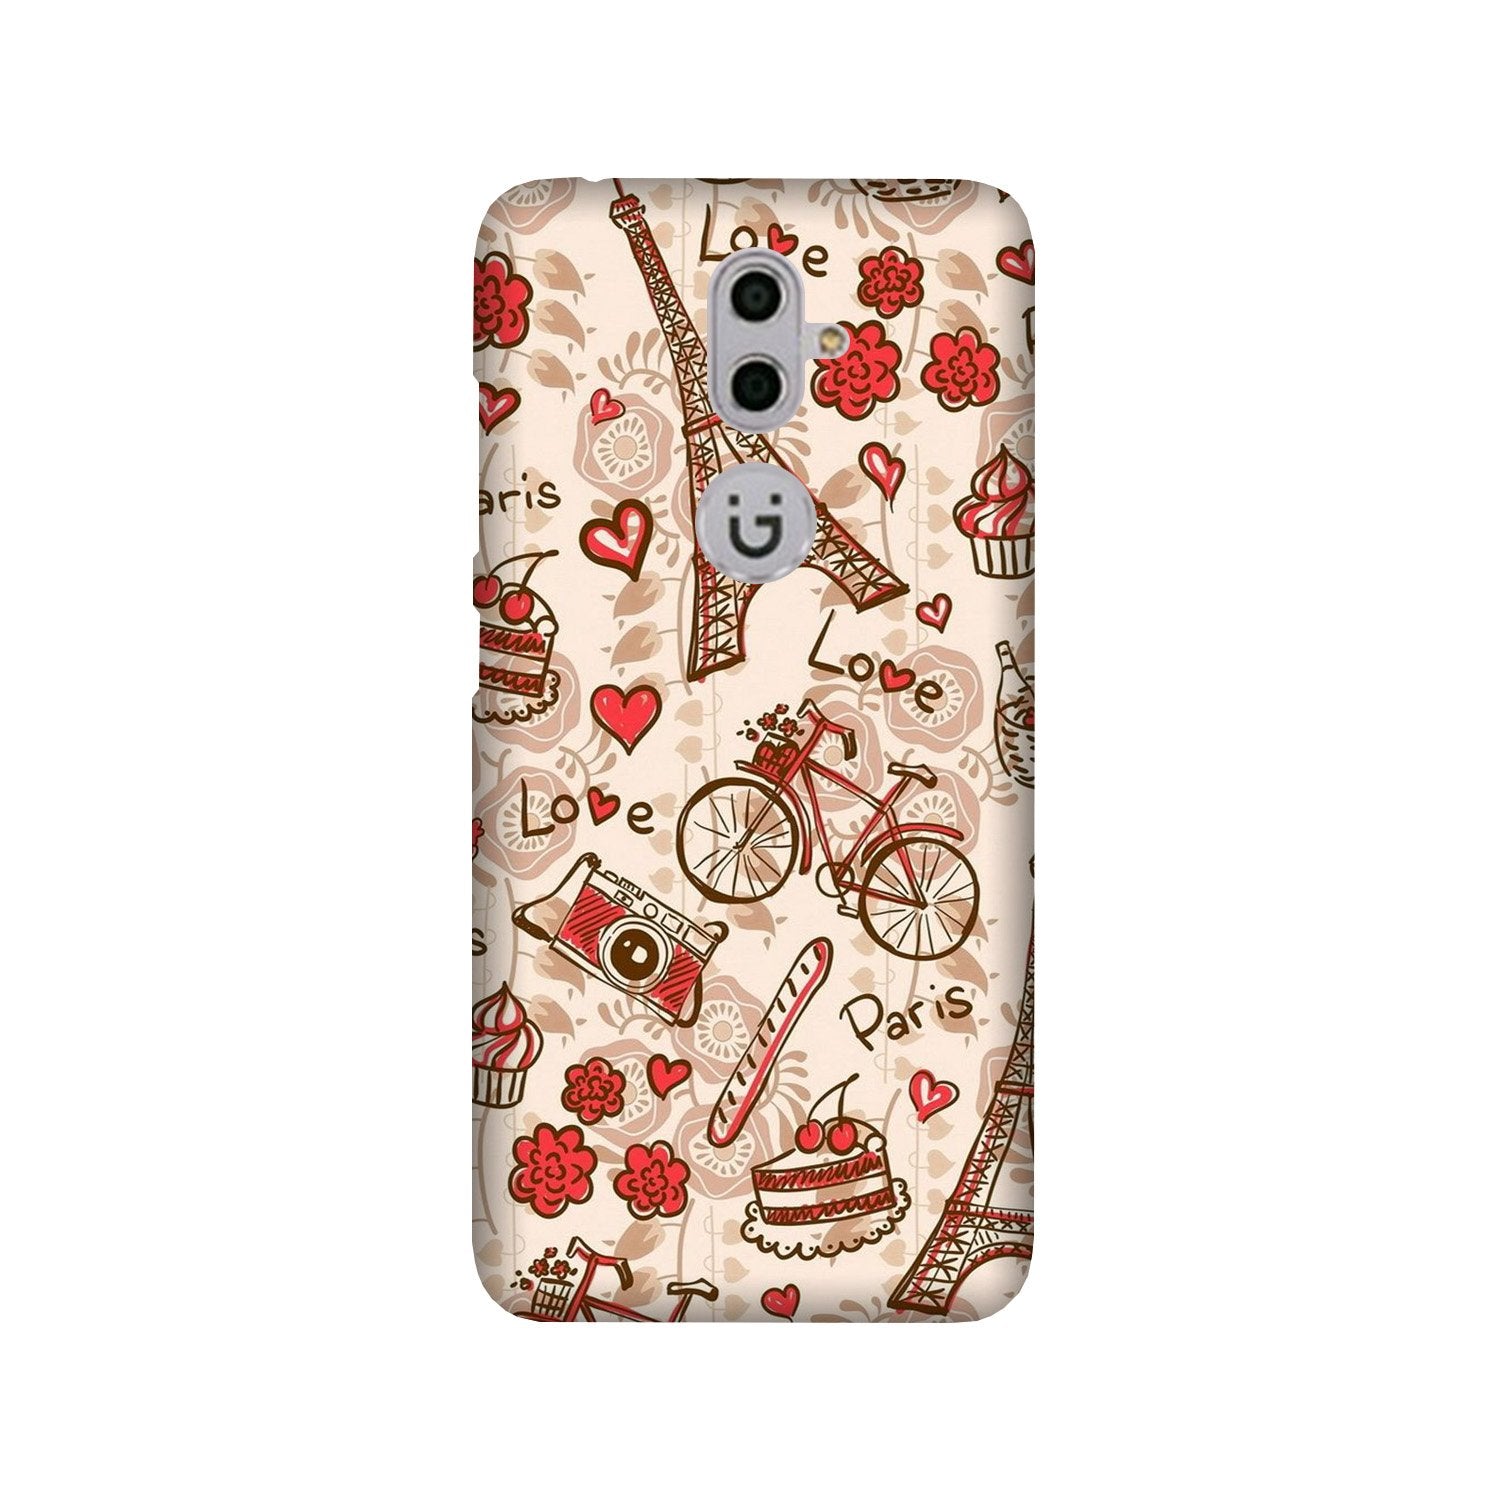 Love Paris Case for Gionee S9(Design - 103)